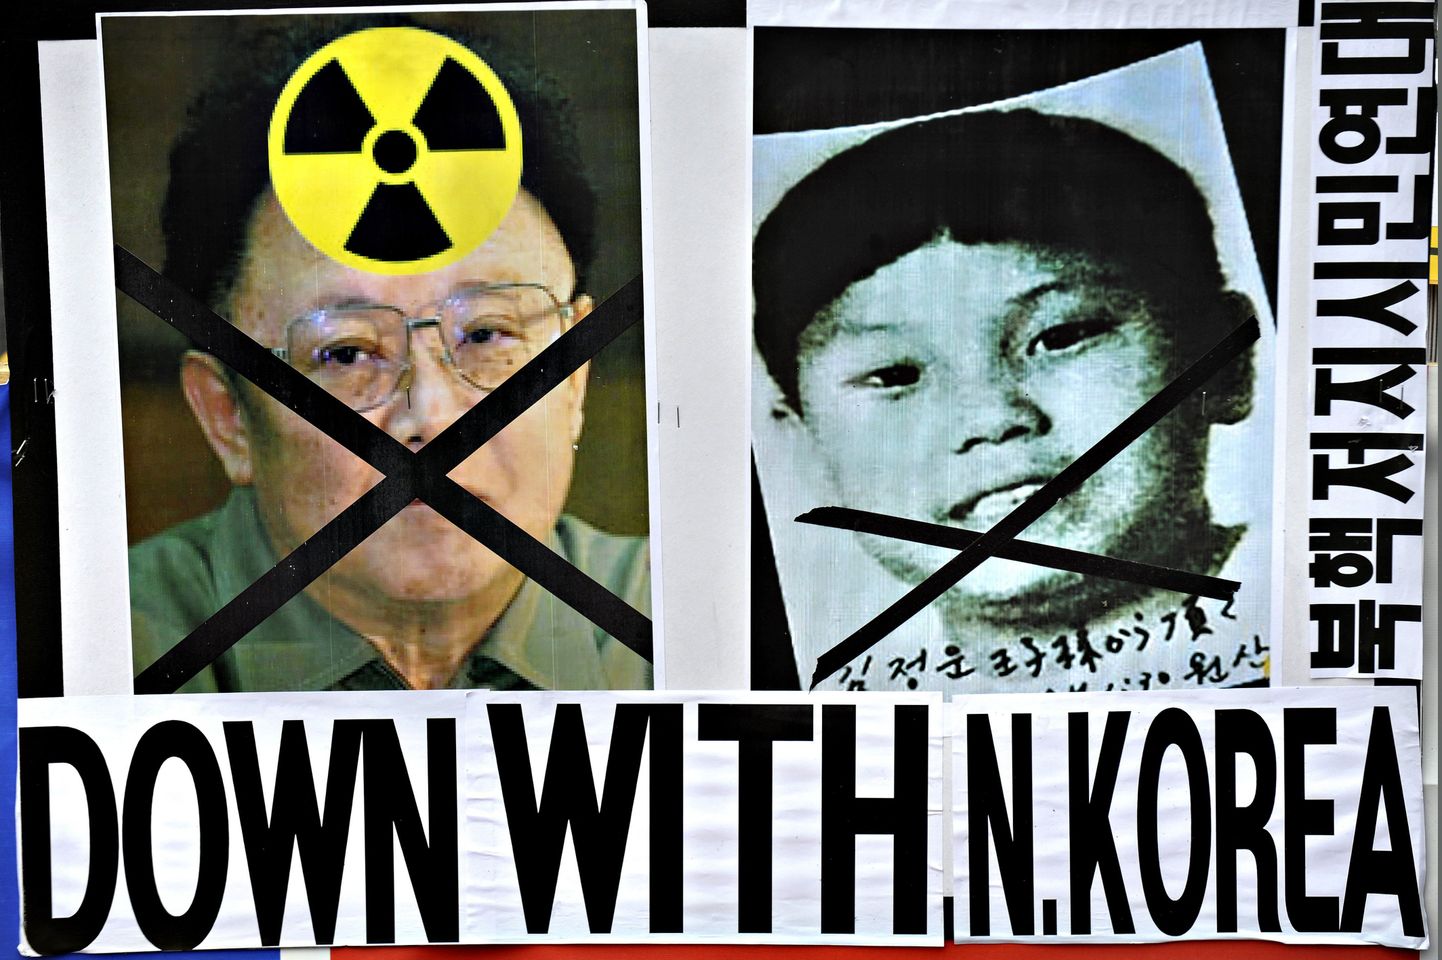 Lõuna-Koreas peetud meelavalduse plakat, kus on kujutatud Kim Jong-ili ja tema poega Kim Jong-uni.